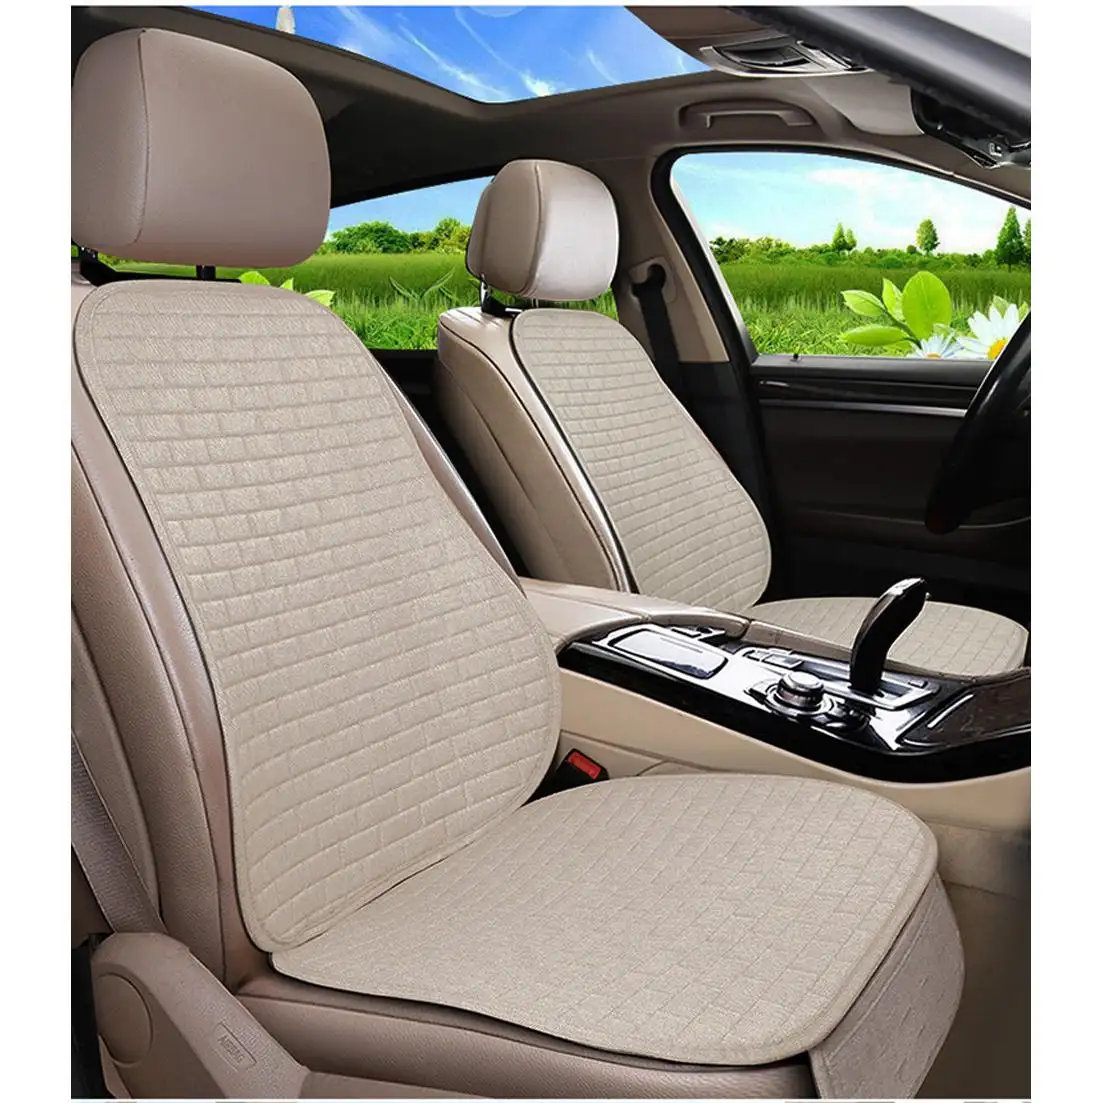 เบาะรองนั่งในรถยนต์ผ้าลินิน/ผ้าลินินไม่ขยับเบาะรองนั่งเย็นแบบไม่เลื่อนอุปกรณ์เสริมรถยนต์สำหรับเปอโยต์5008 X36 FR2